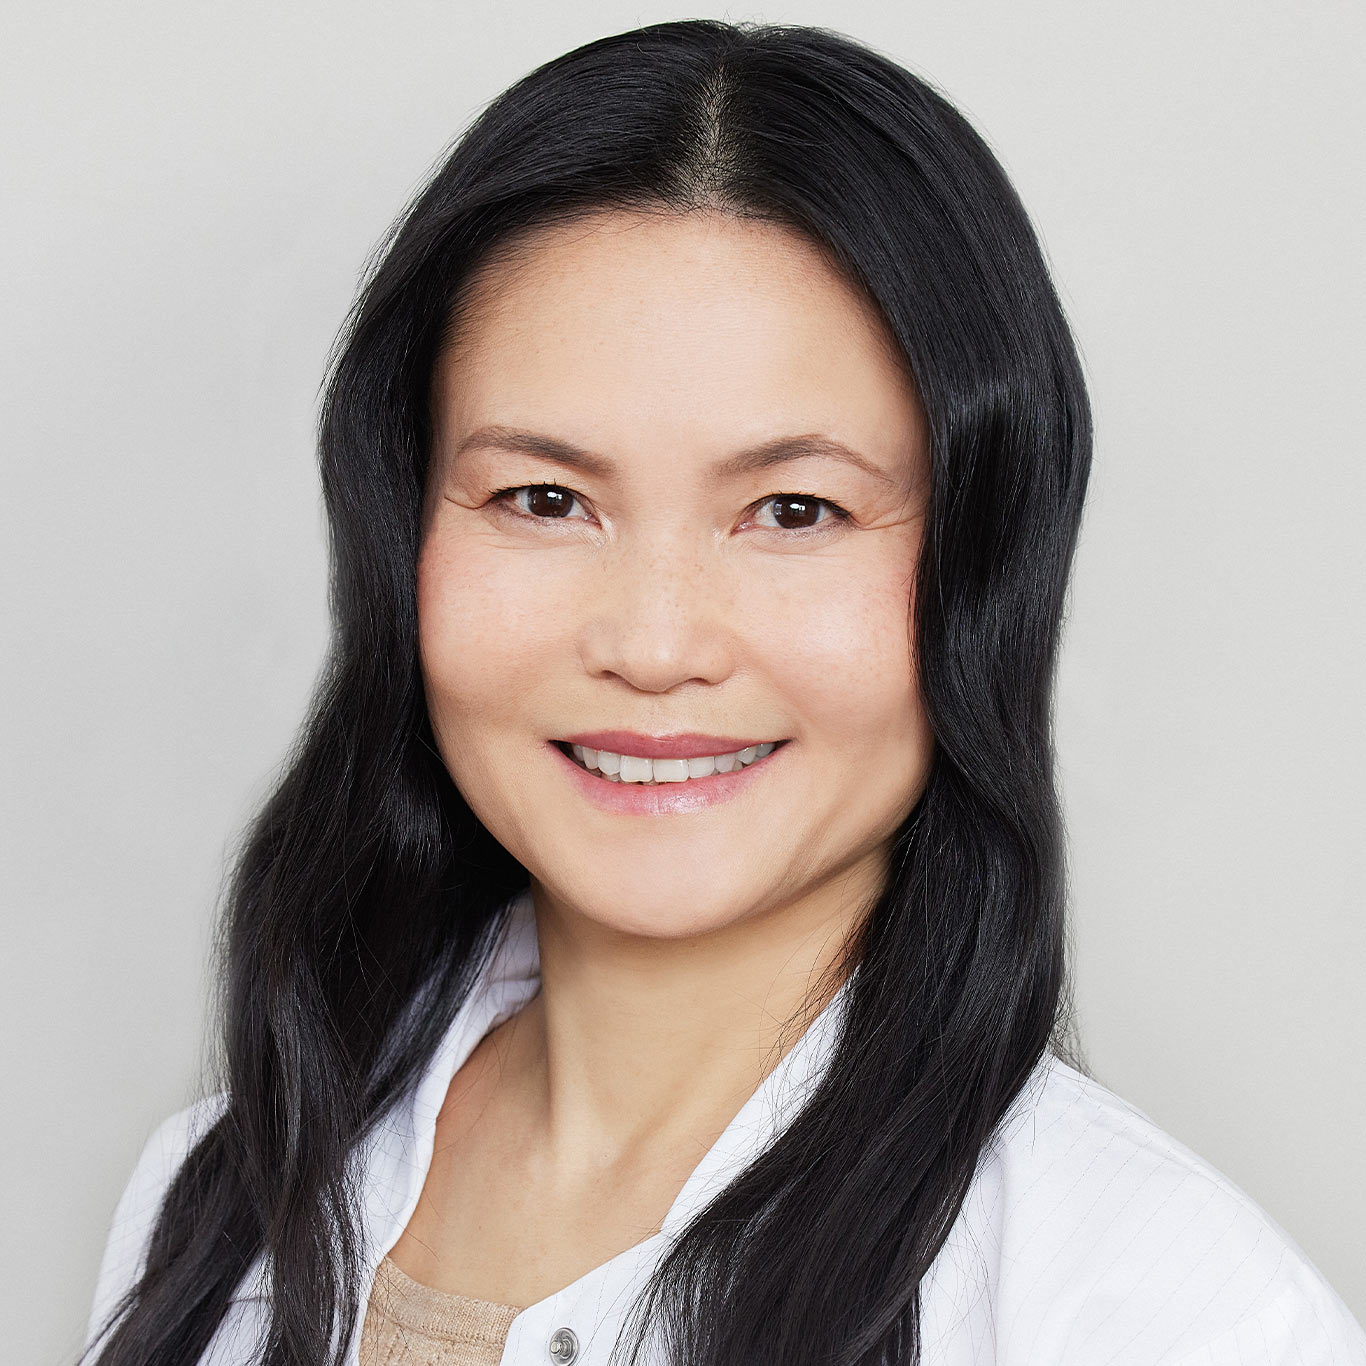 Dr. Danica Chen